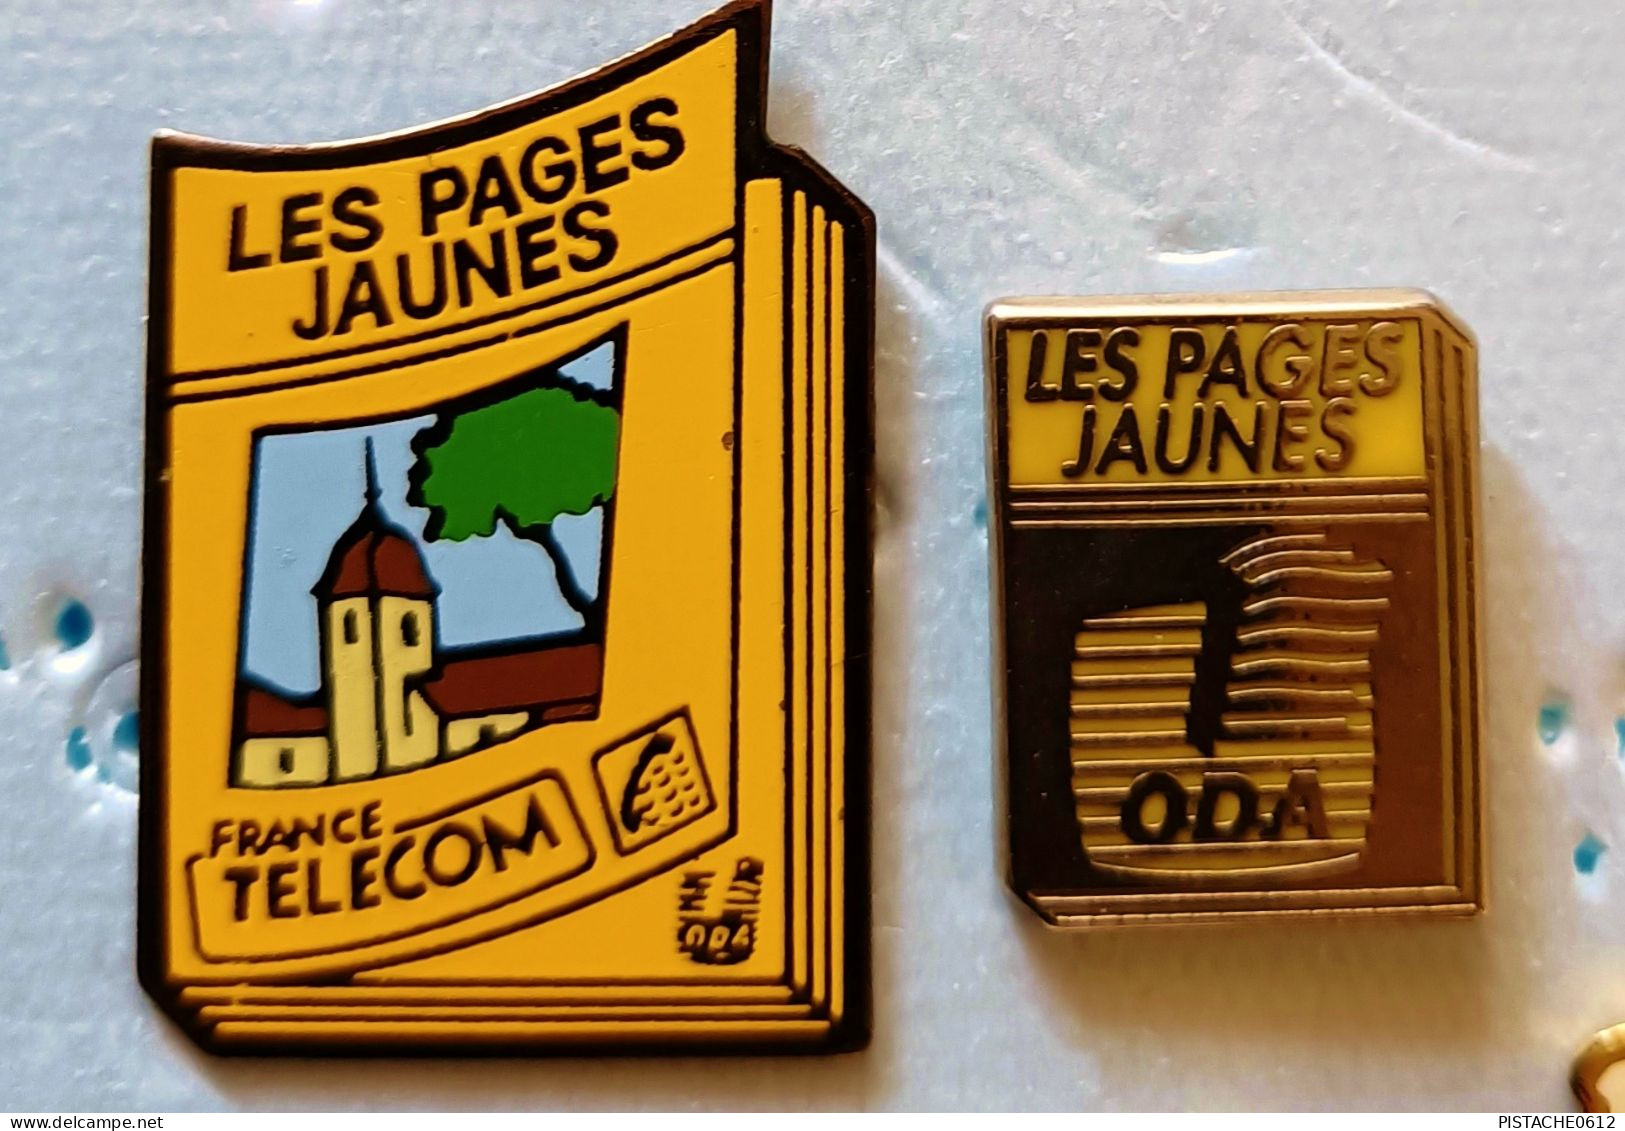 Pin's France Telecom Les Pages Jaune O.D.A 2 Pin's (lot 1) - France Telecom